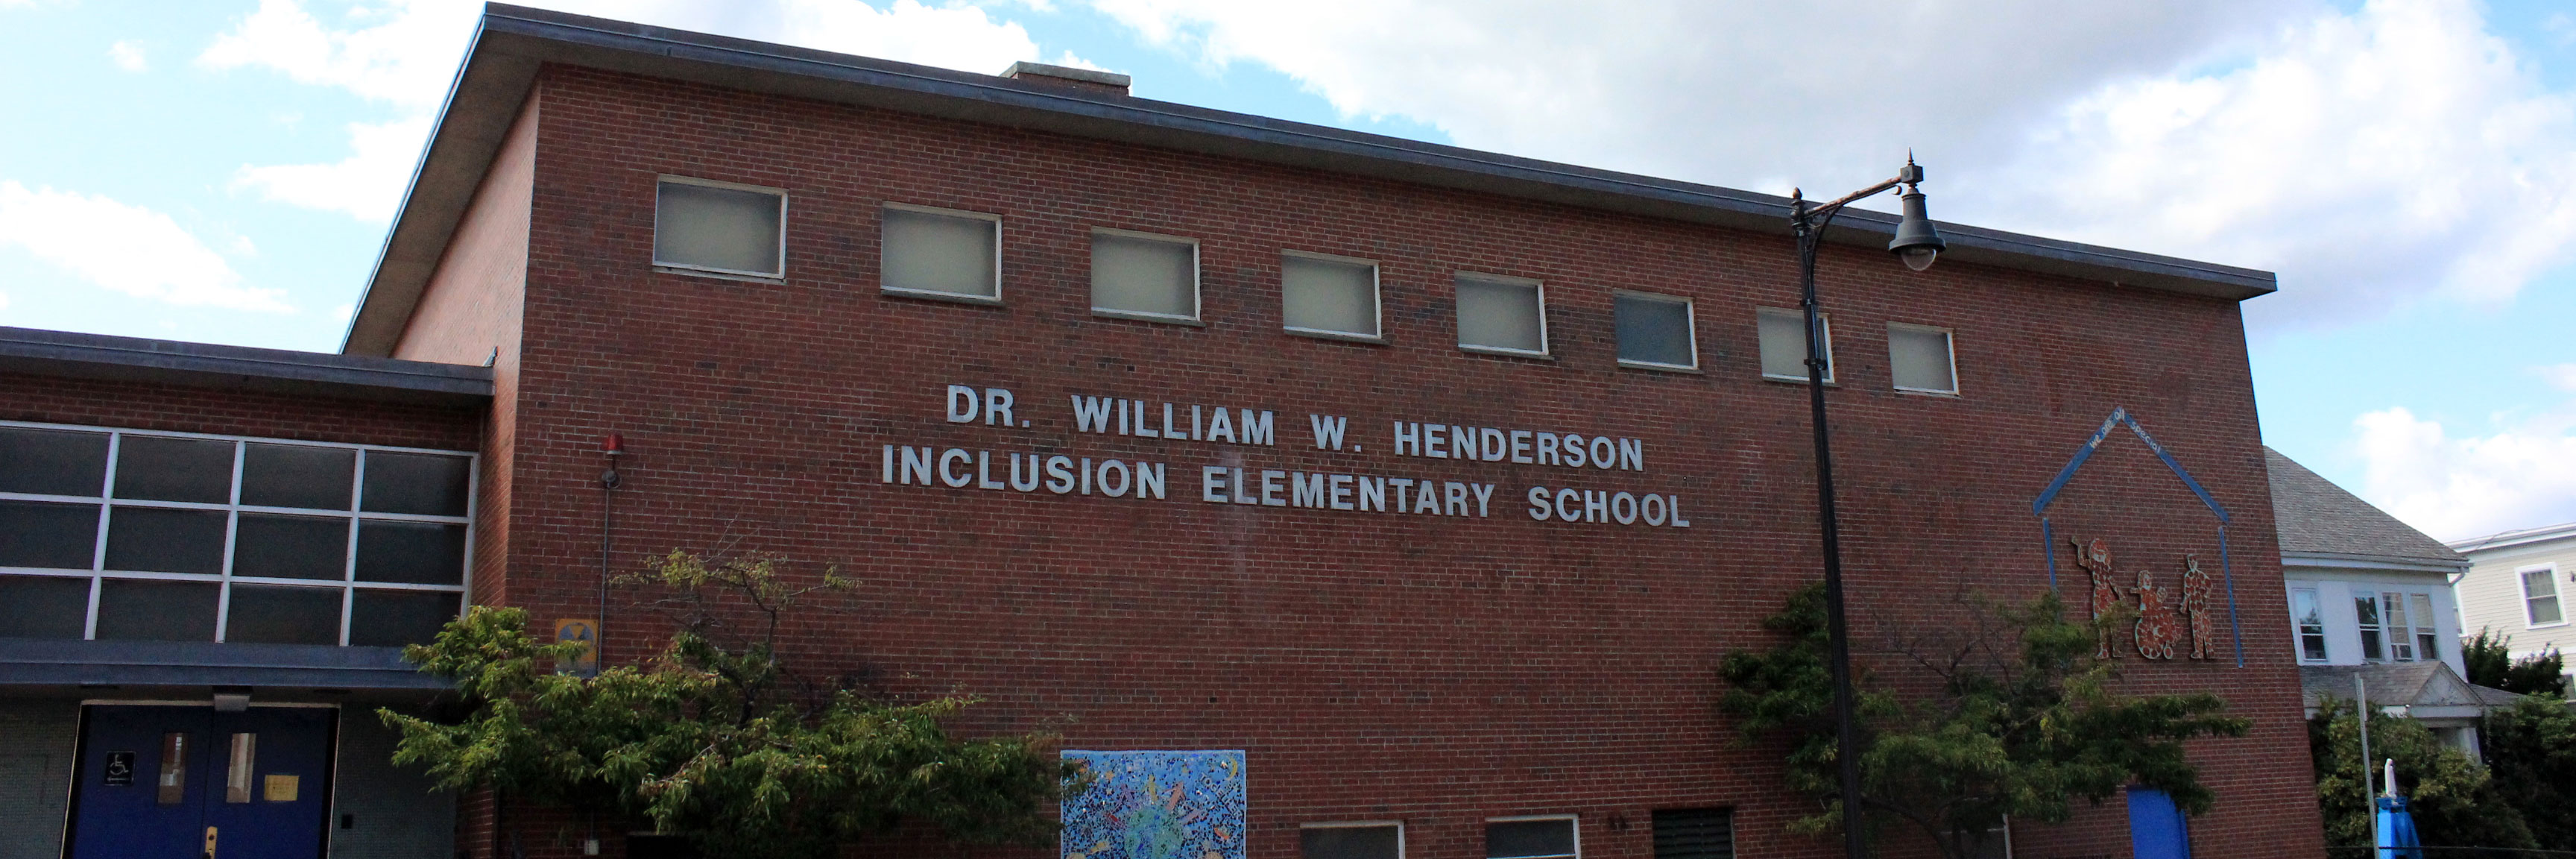 O caso da Escola William Henderson - DIVERSA - Educação inclusiva